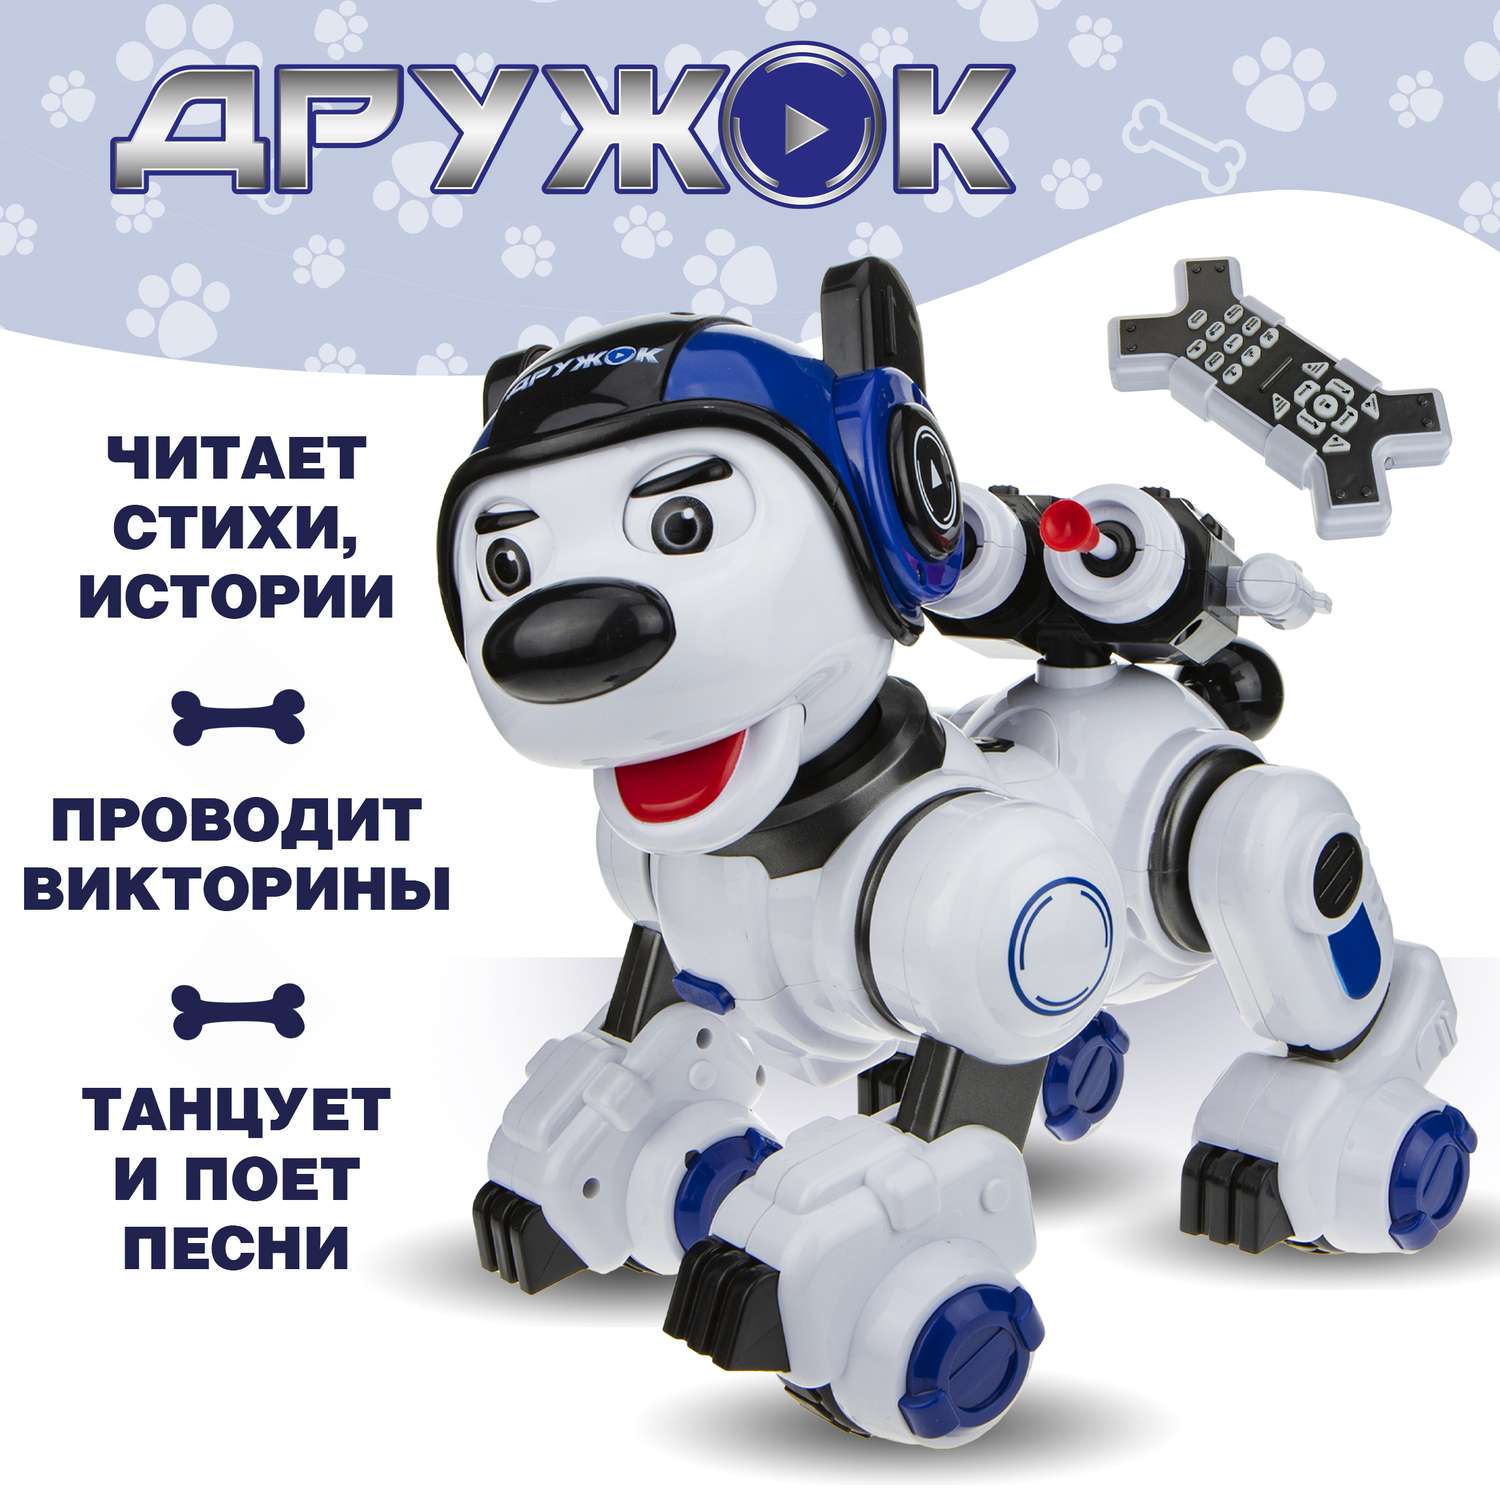 Интерактивная игрушка 1TOY робот щенок Дружок радиоуправляемый - фото 1